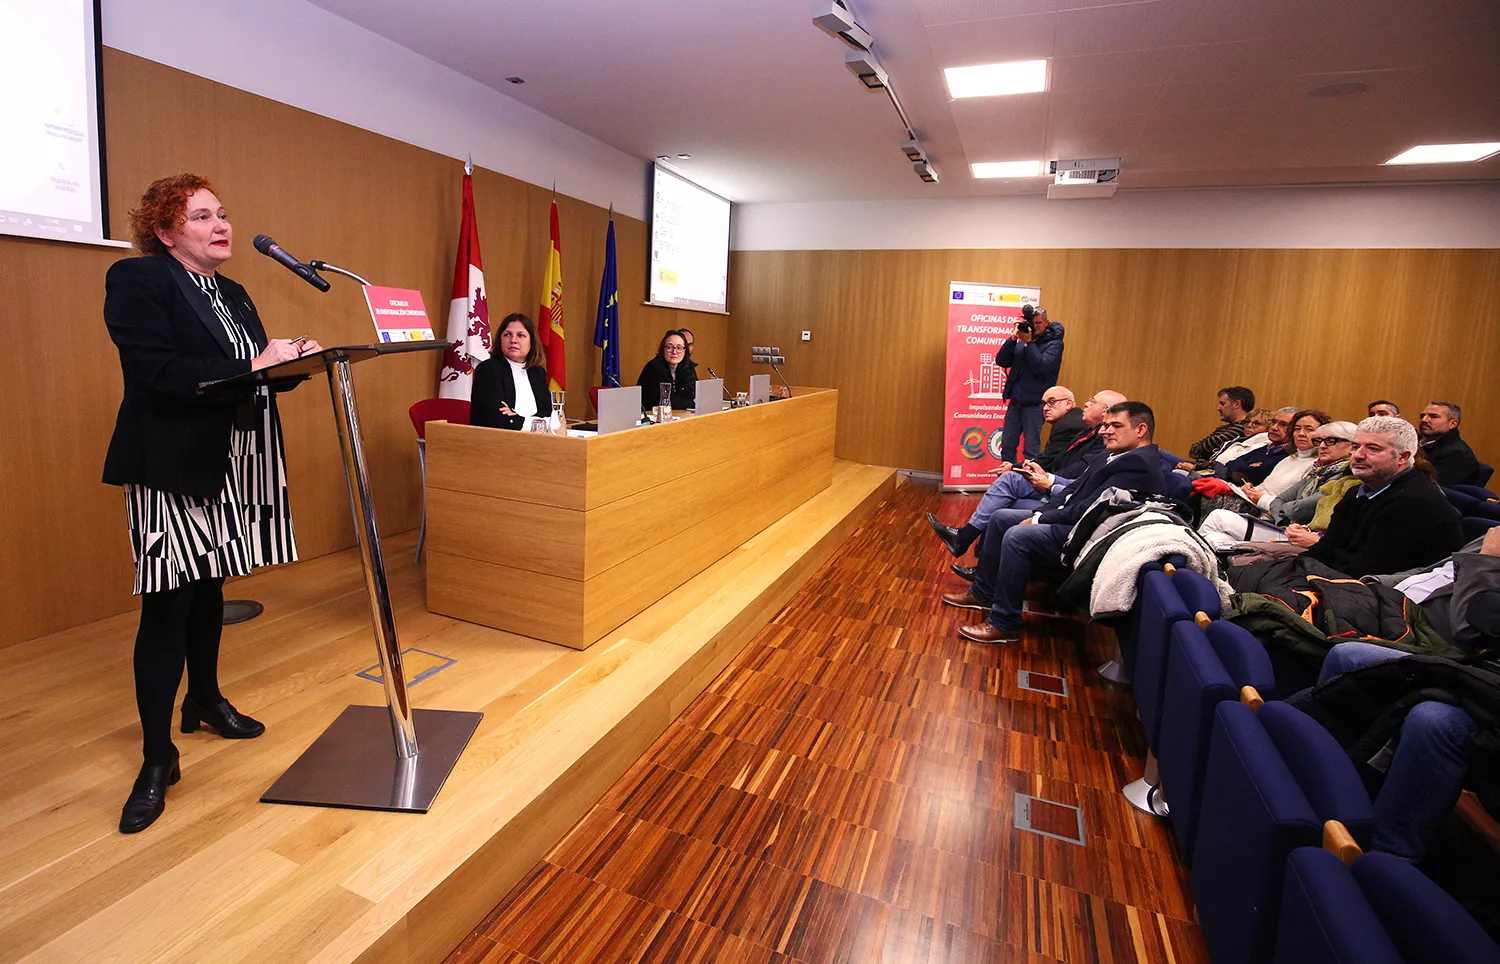 Ciuden abre la primera Oficina de Transformación Comunitaria de Castilla y León para impulsar las comunidades energéticas